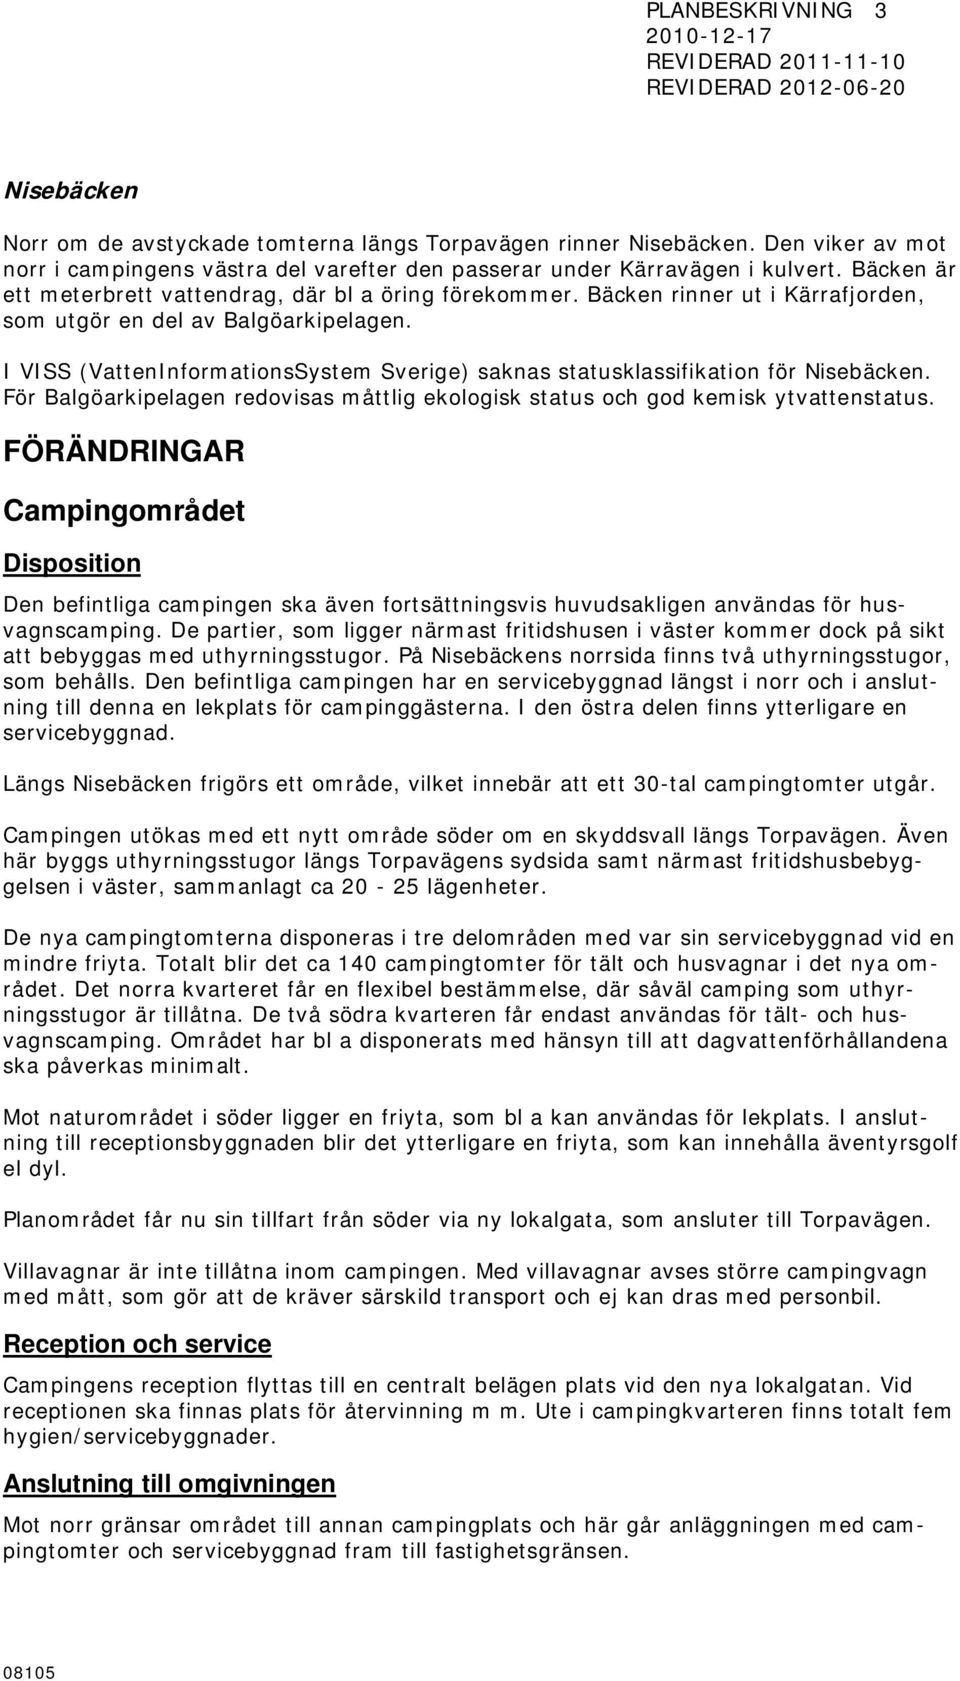 I VISS (VattenInformationsSystem Sverige) saknas statusklassifikation för Nisebäcken. För Balgöarkipelagen redovisas måttlig ekologisk status och god kemisk ytvattenstatus.